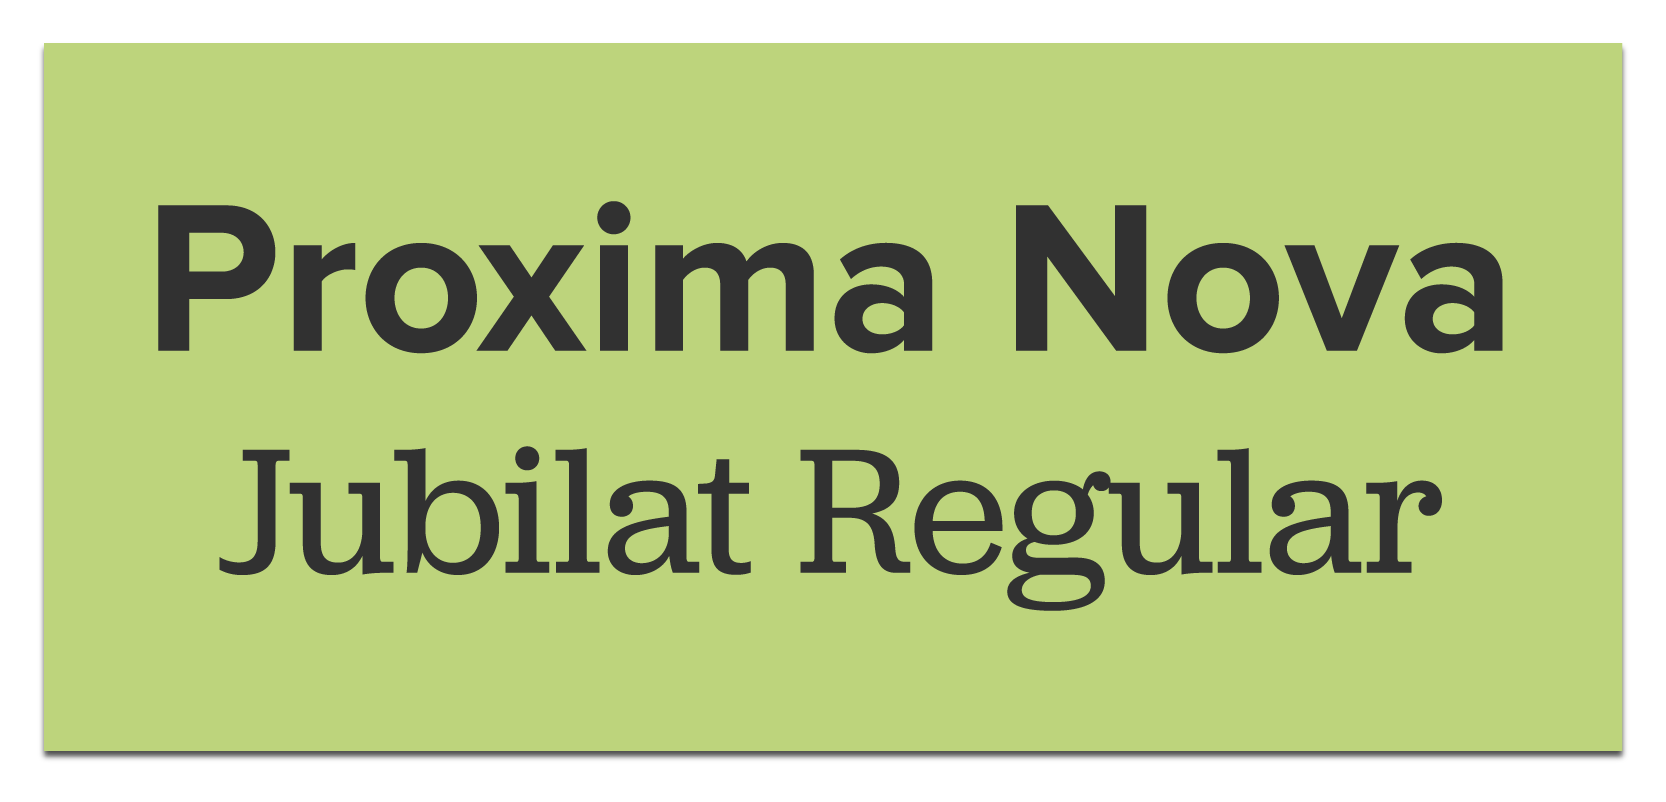 Exempel på Proxima Nova och Jubilat.